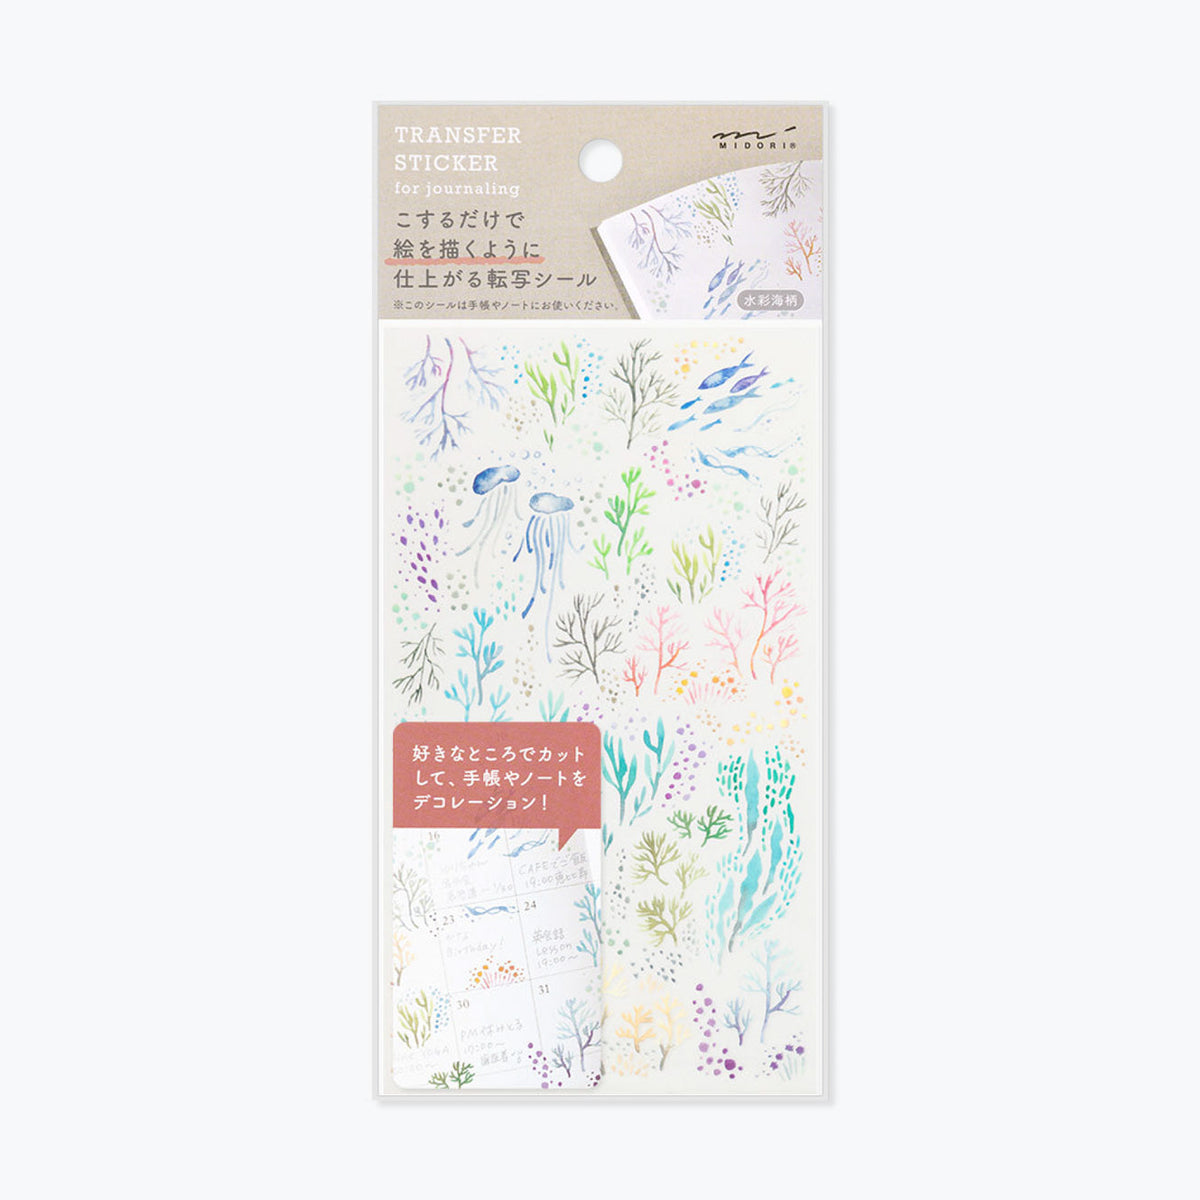 Midori - Sticker Seal - Transfer - Watercolour Sea